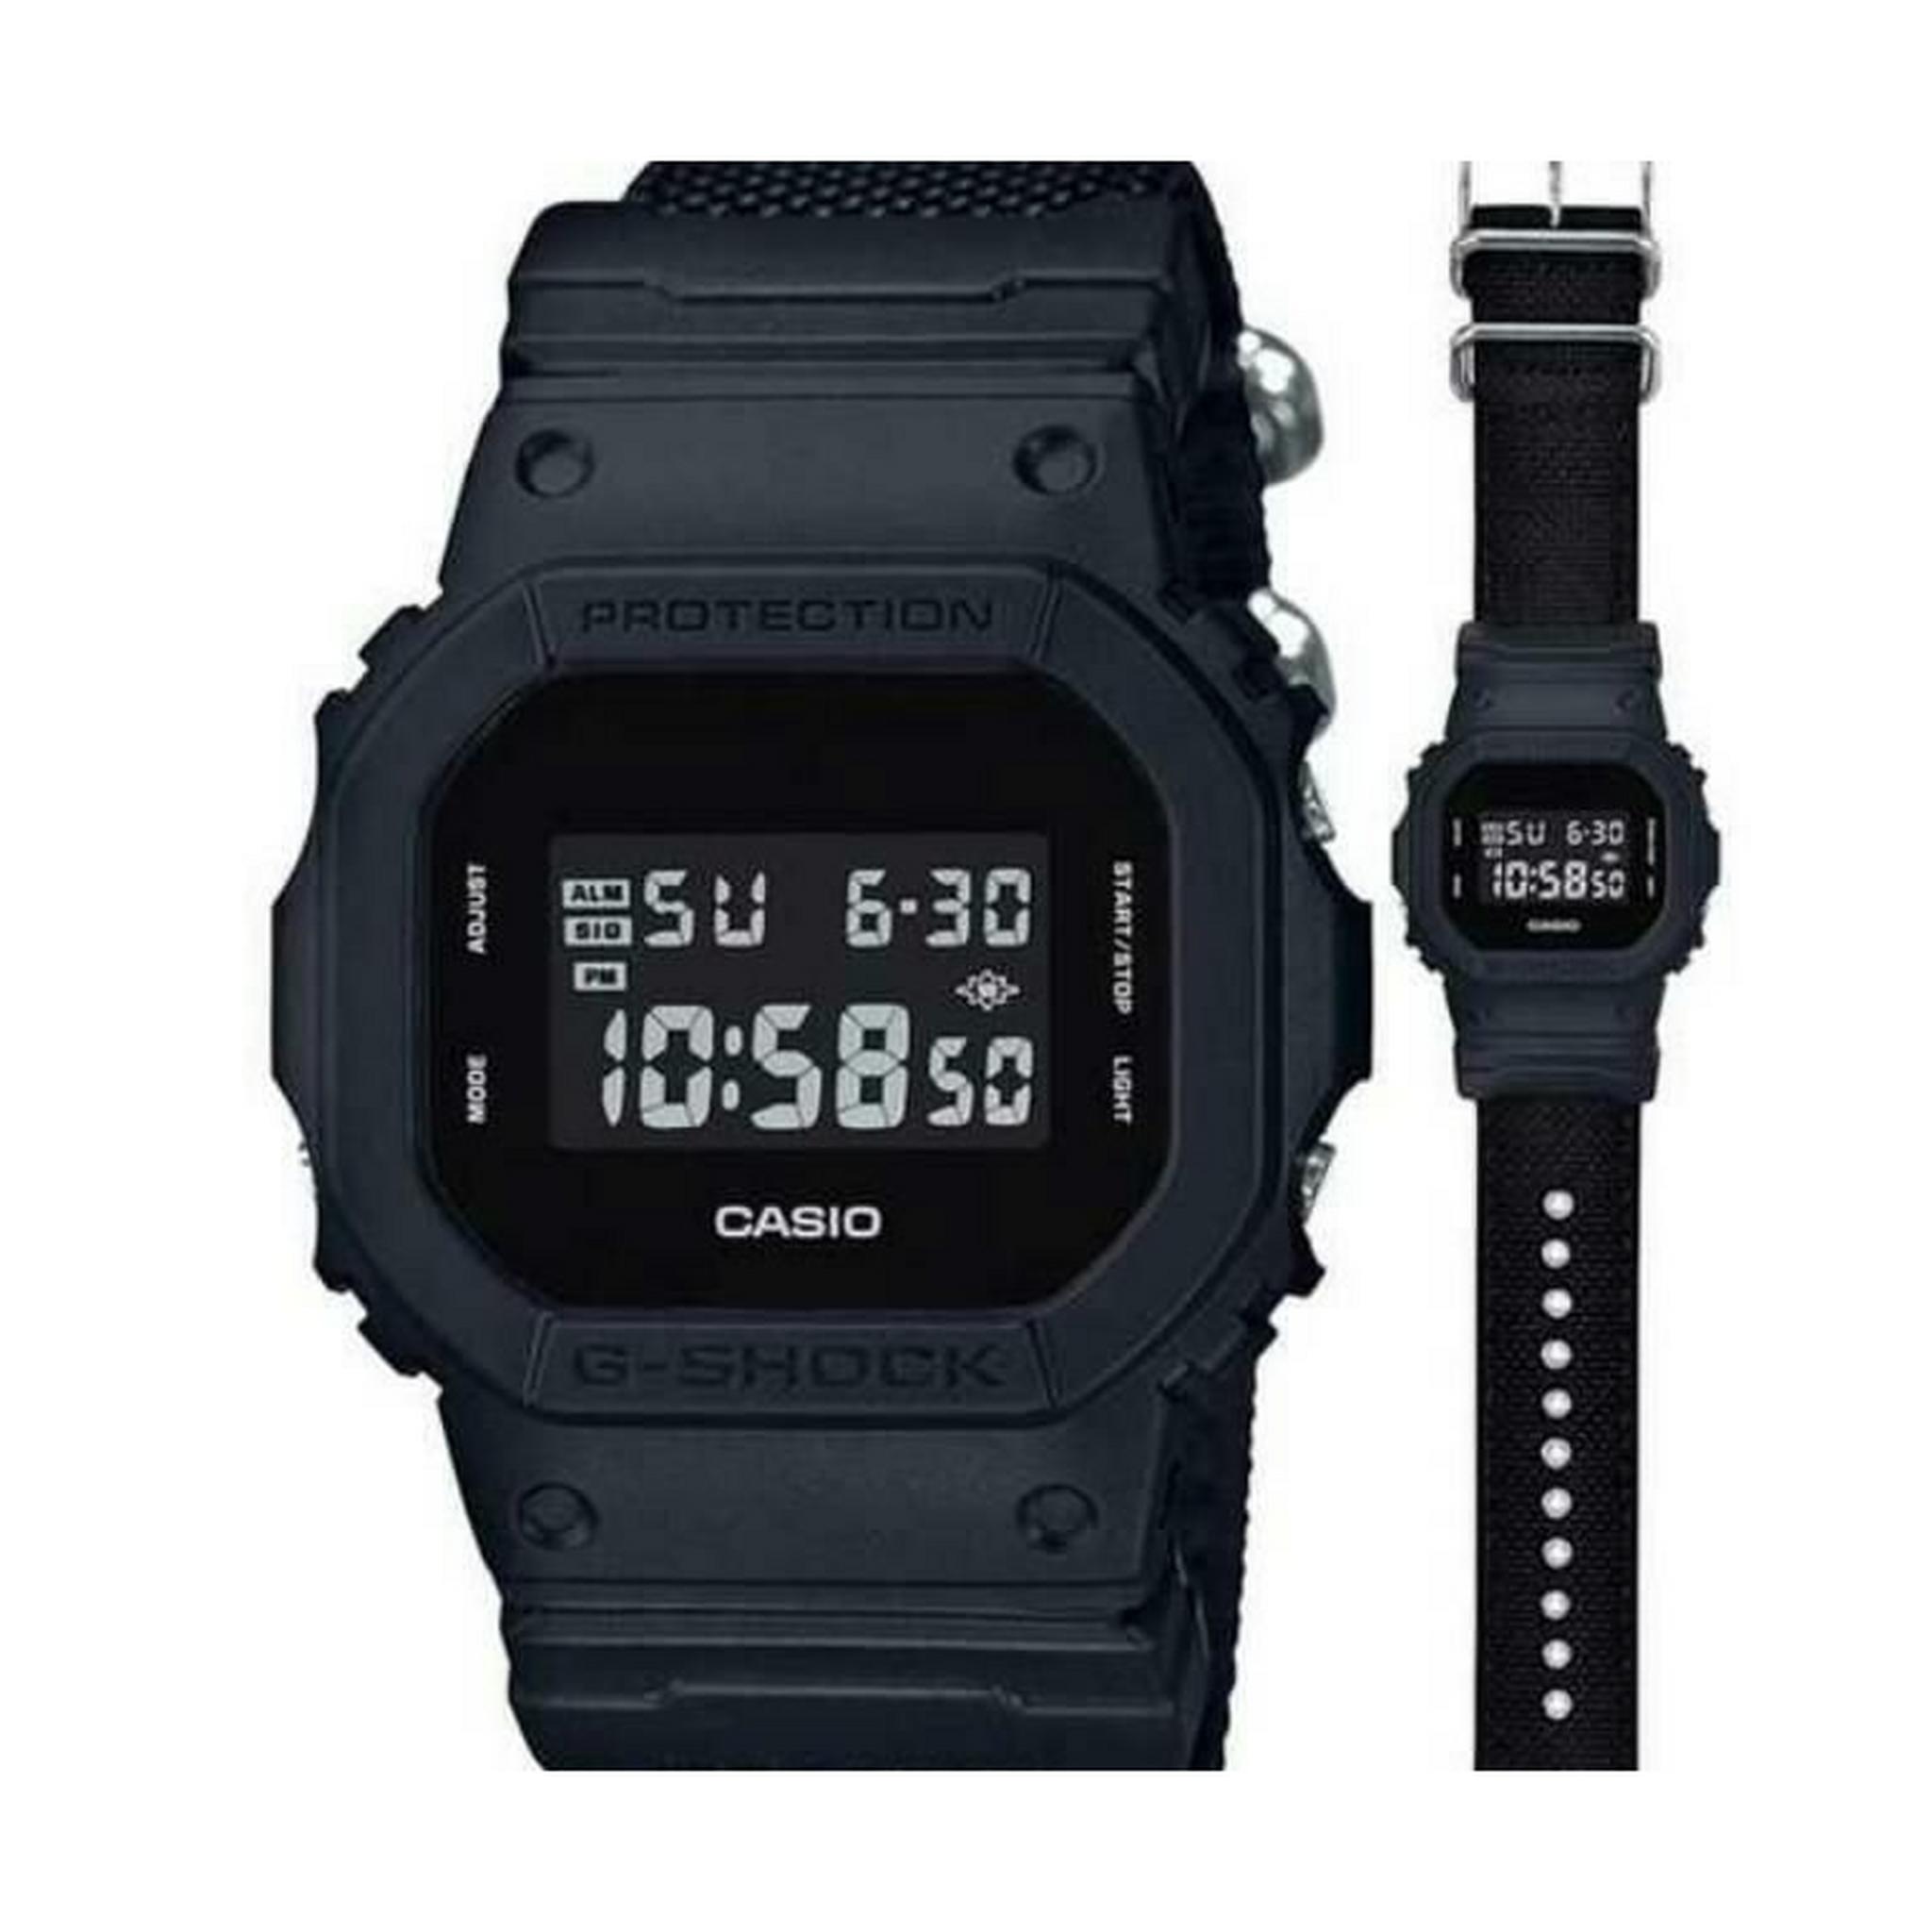 Casio G-shock Digital Gents Nylon Watch (DW-5600BBN-1DR)